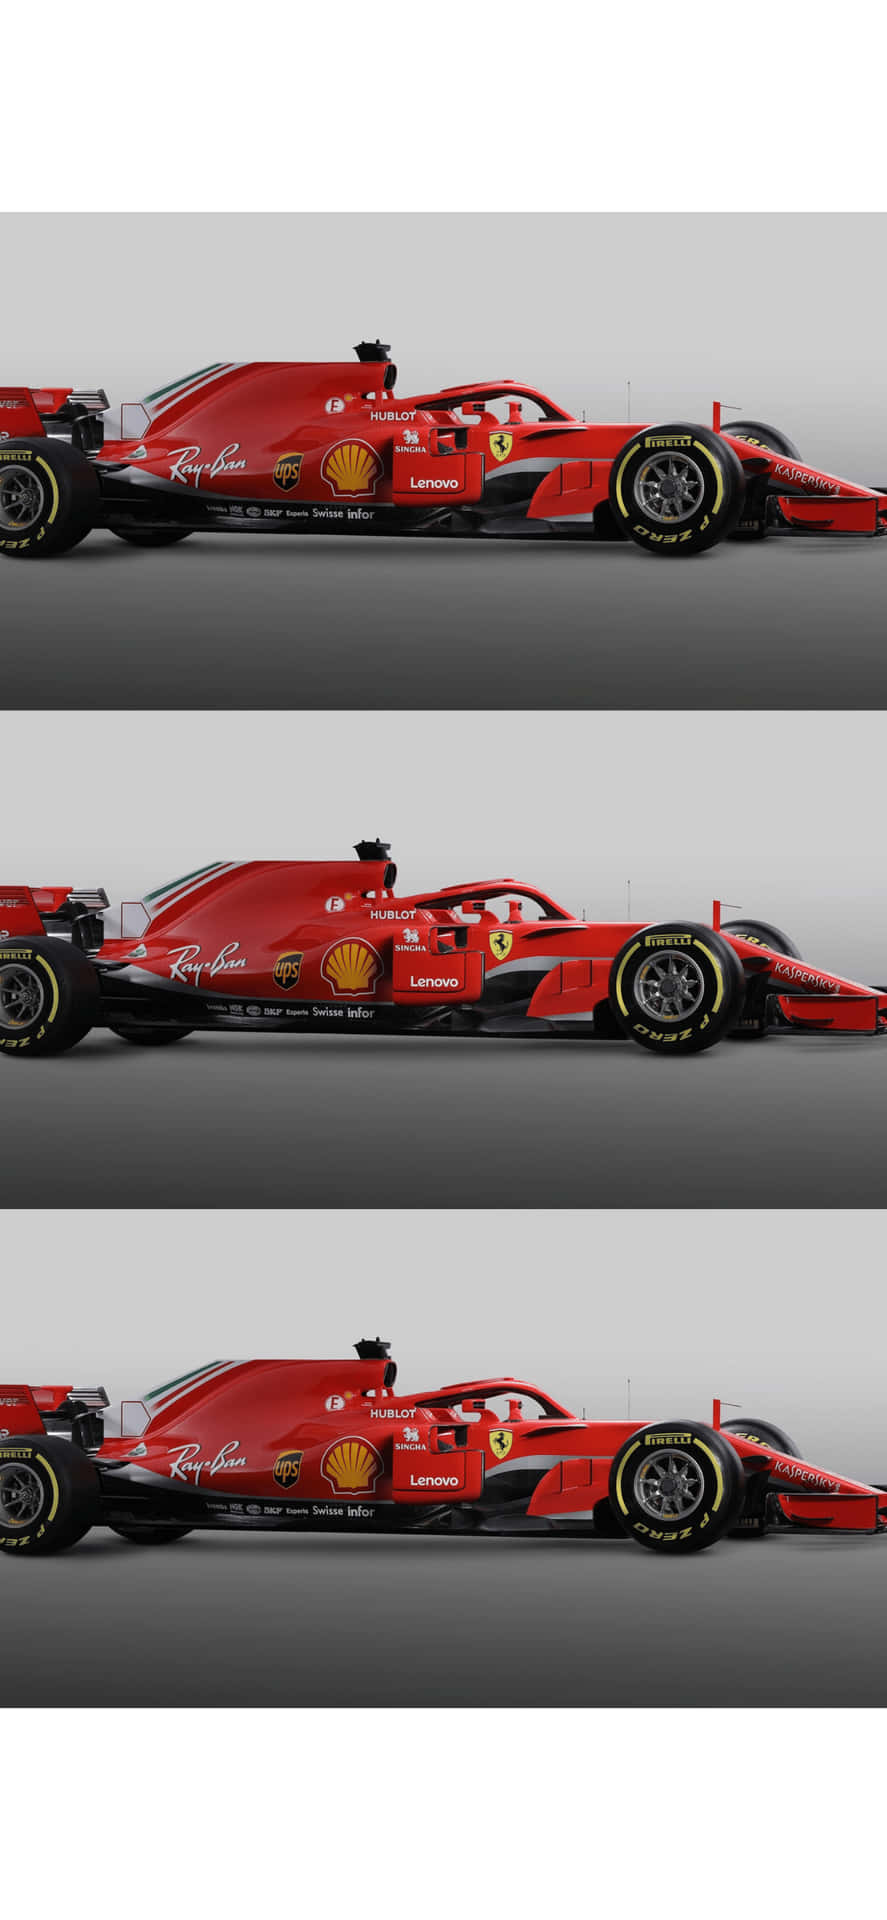 Collagedel Profilo Laterale Sfondo Iphone Xs F1 2018